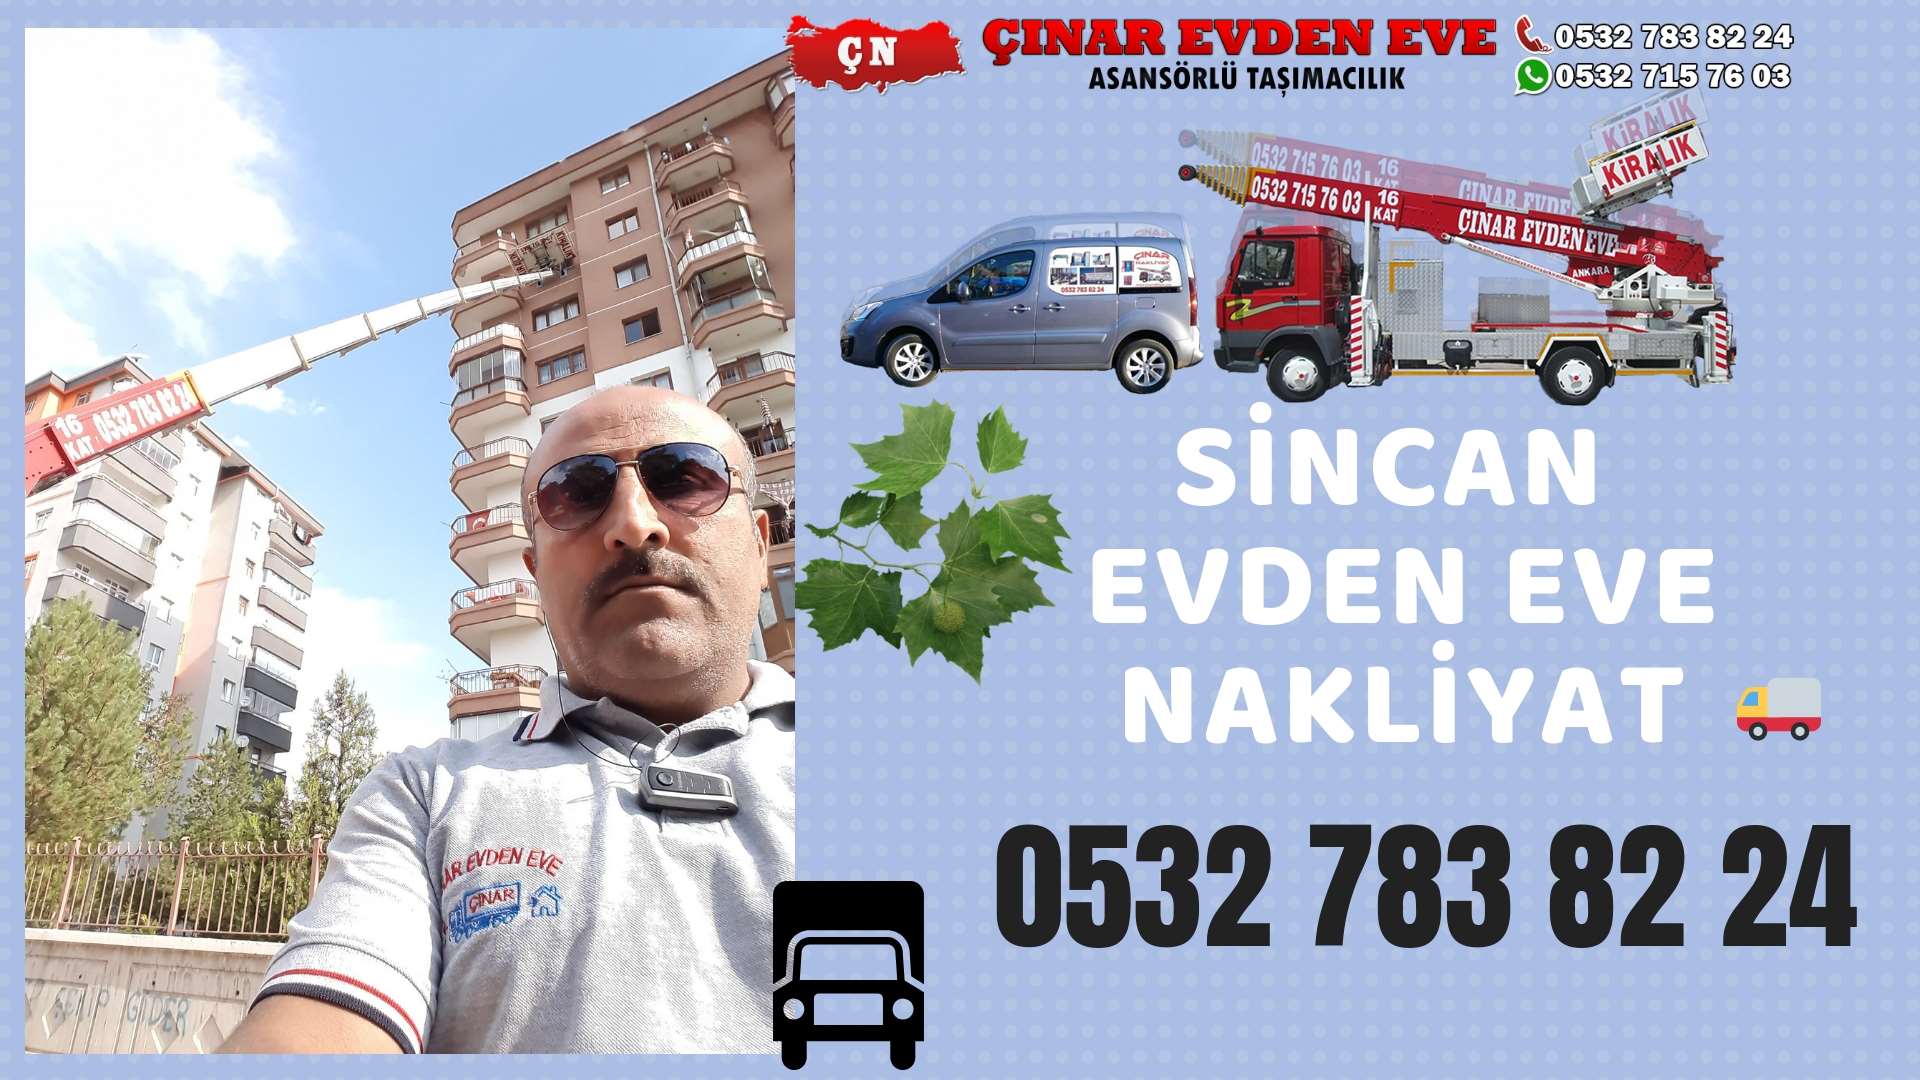 Ankara Saraycık Evden Eve Nakliyat, Asansörlü Taşımacılık, Ofis / İş Yeri Taşıma 0532 715 76 03